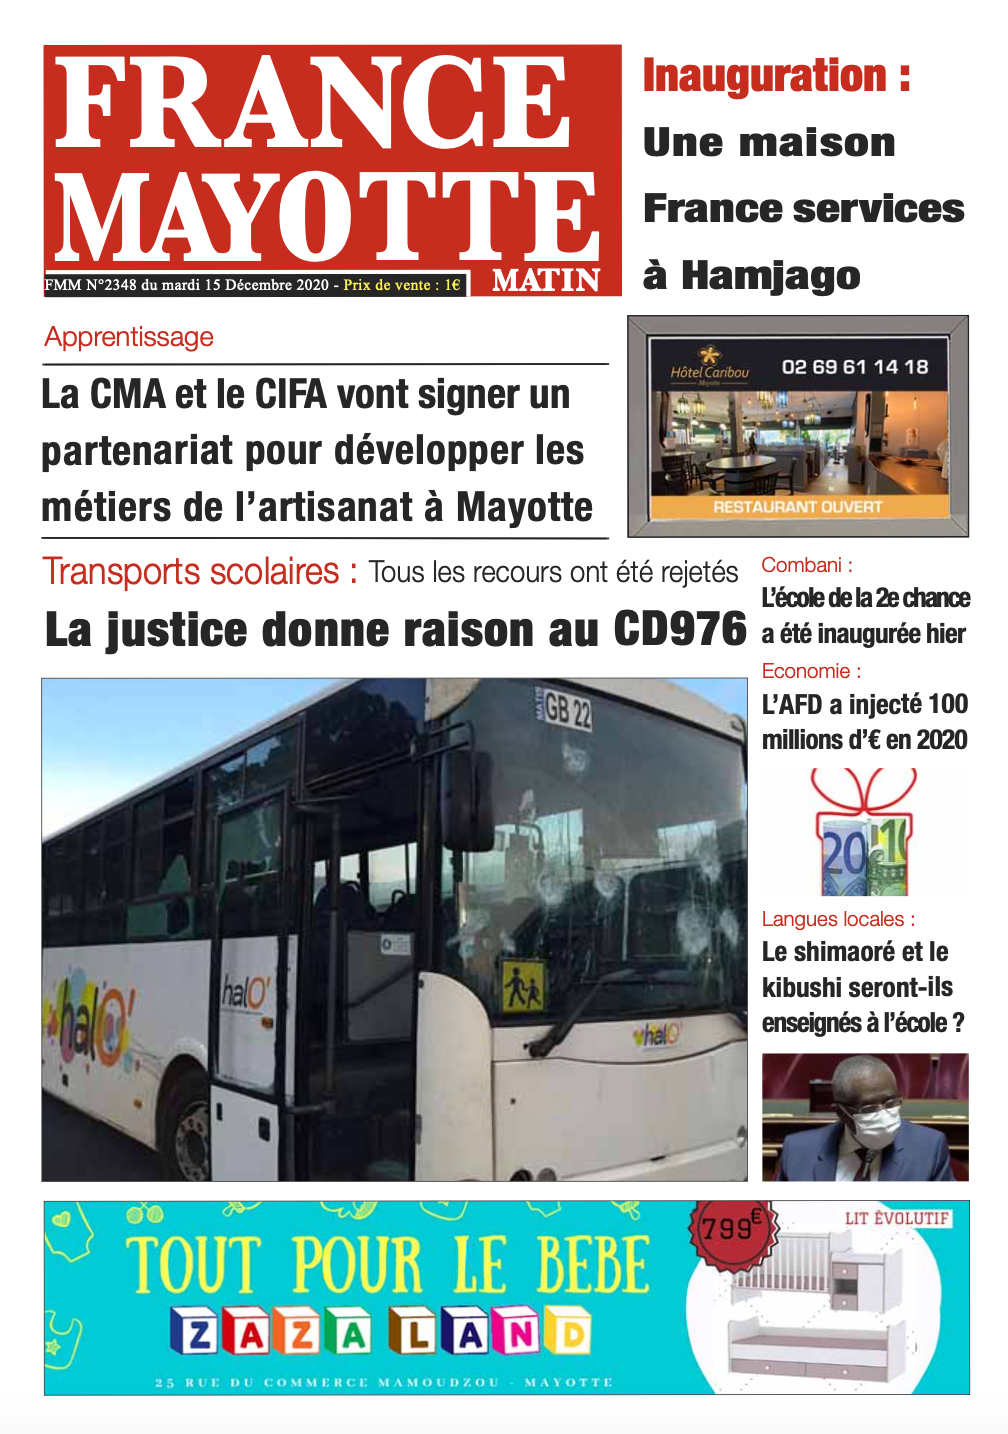 France Mayotte Mardi 15 décembre 2020